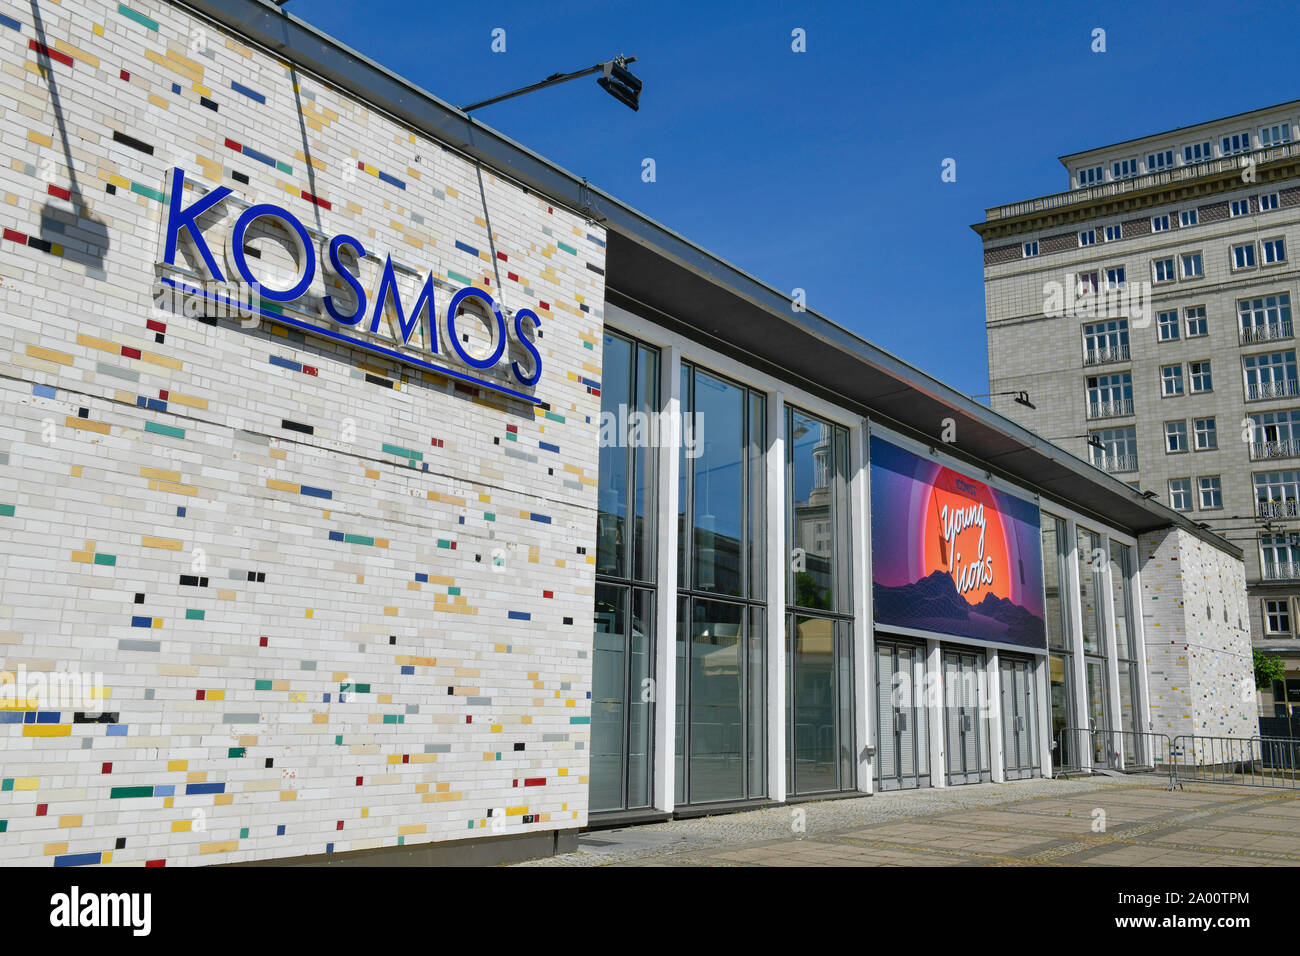 Kosmos Kino, Frankfurter Allee, Friedrichshain, Berlin, Deutschland Stock Photo